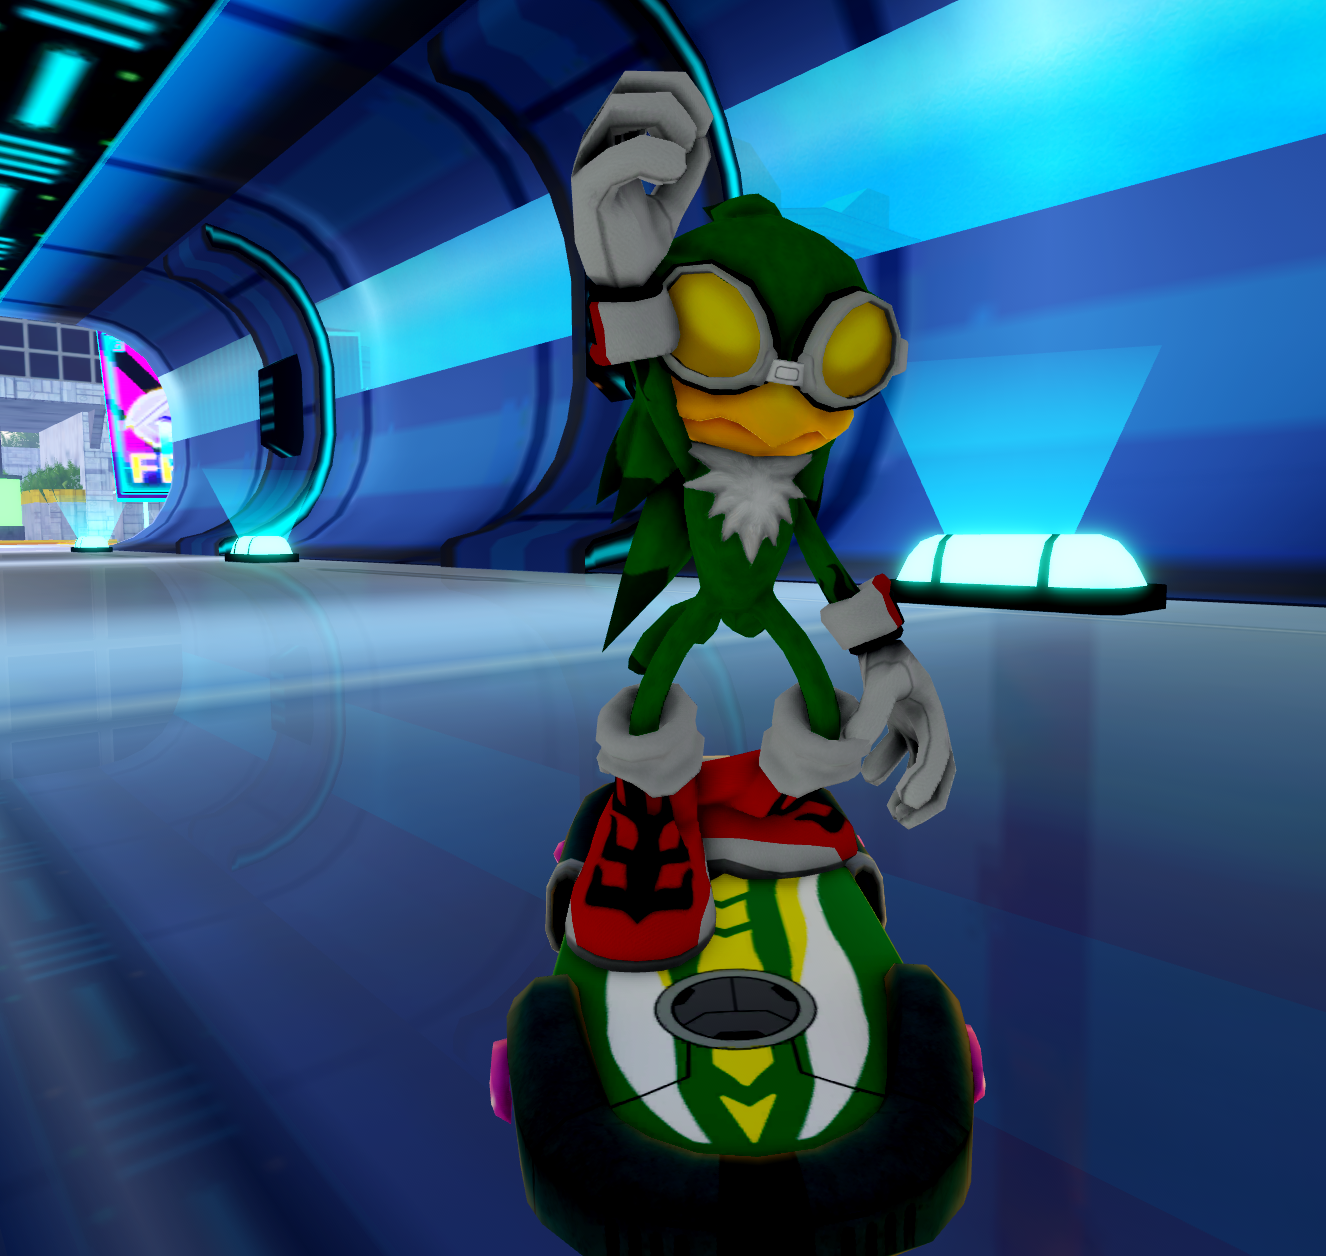 Riders Sonic, Sonic Speed Simulator Wiki